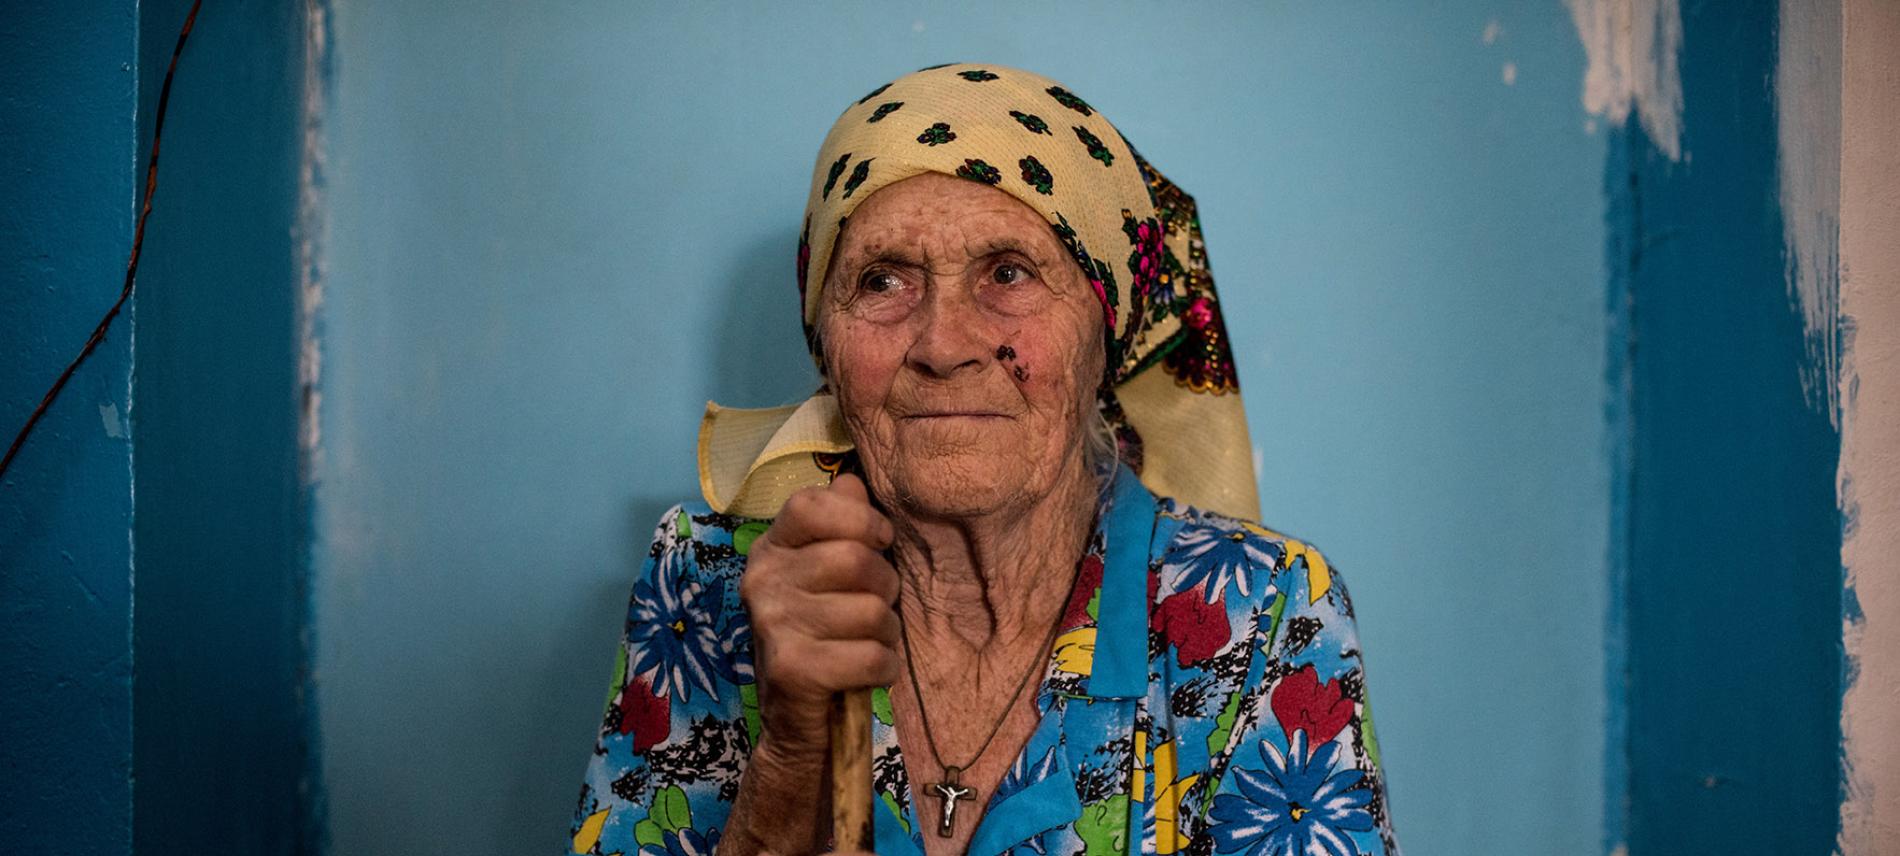 Die ukrainische Bevölkerung im Donbass ist schon jetzt medzinisch schlecht versorgt. Foto: Evgeniy Maloletka 